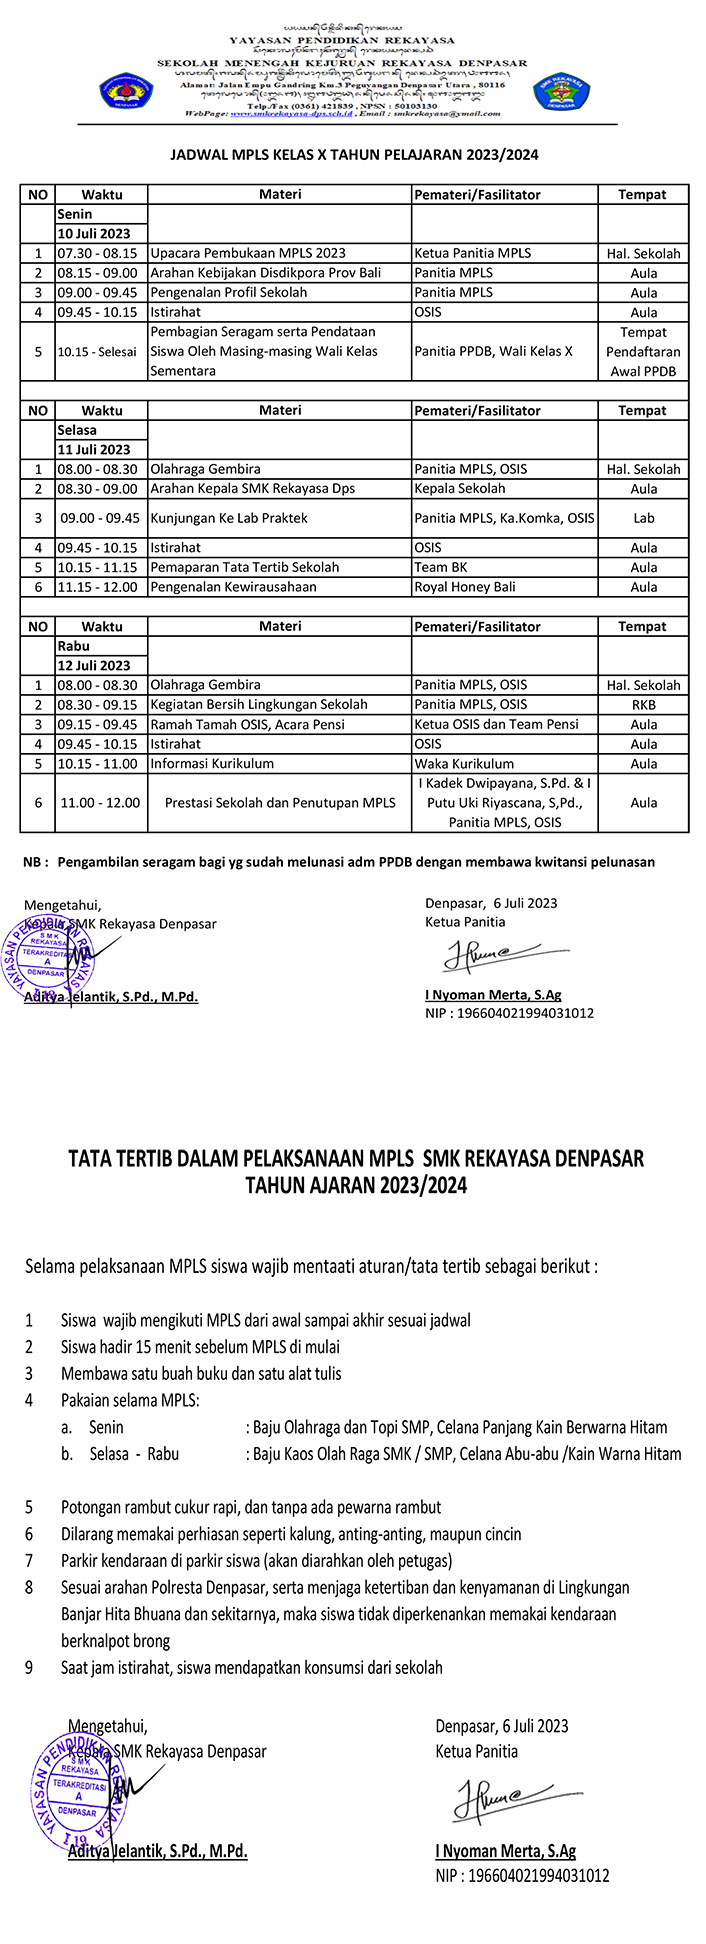 Jadwal MPLS SMK REKAYASA DENPASAR Tahun Pelajaran 2023 / 2024